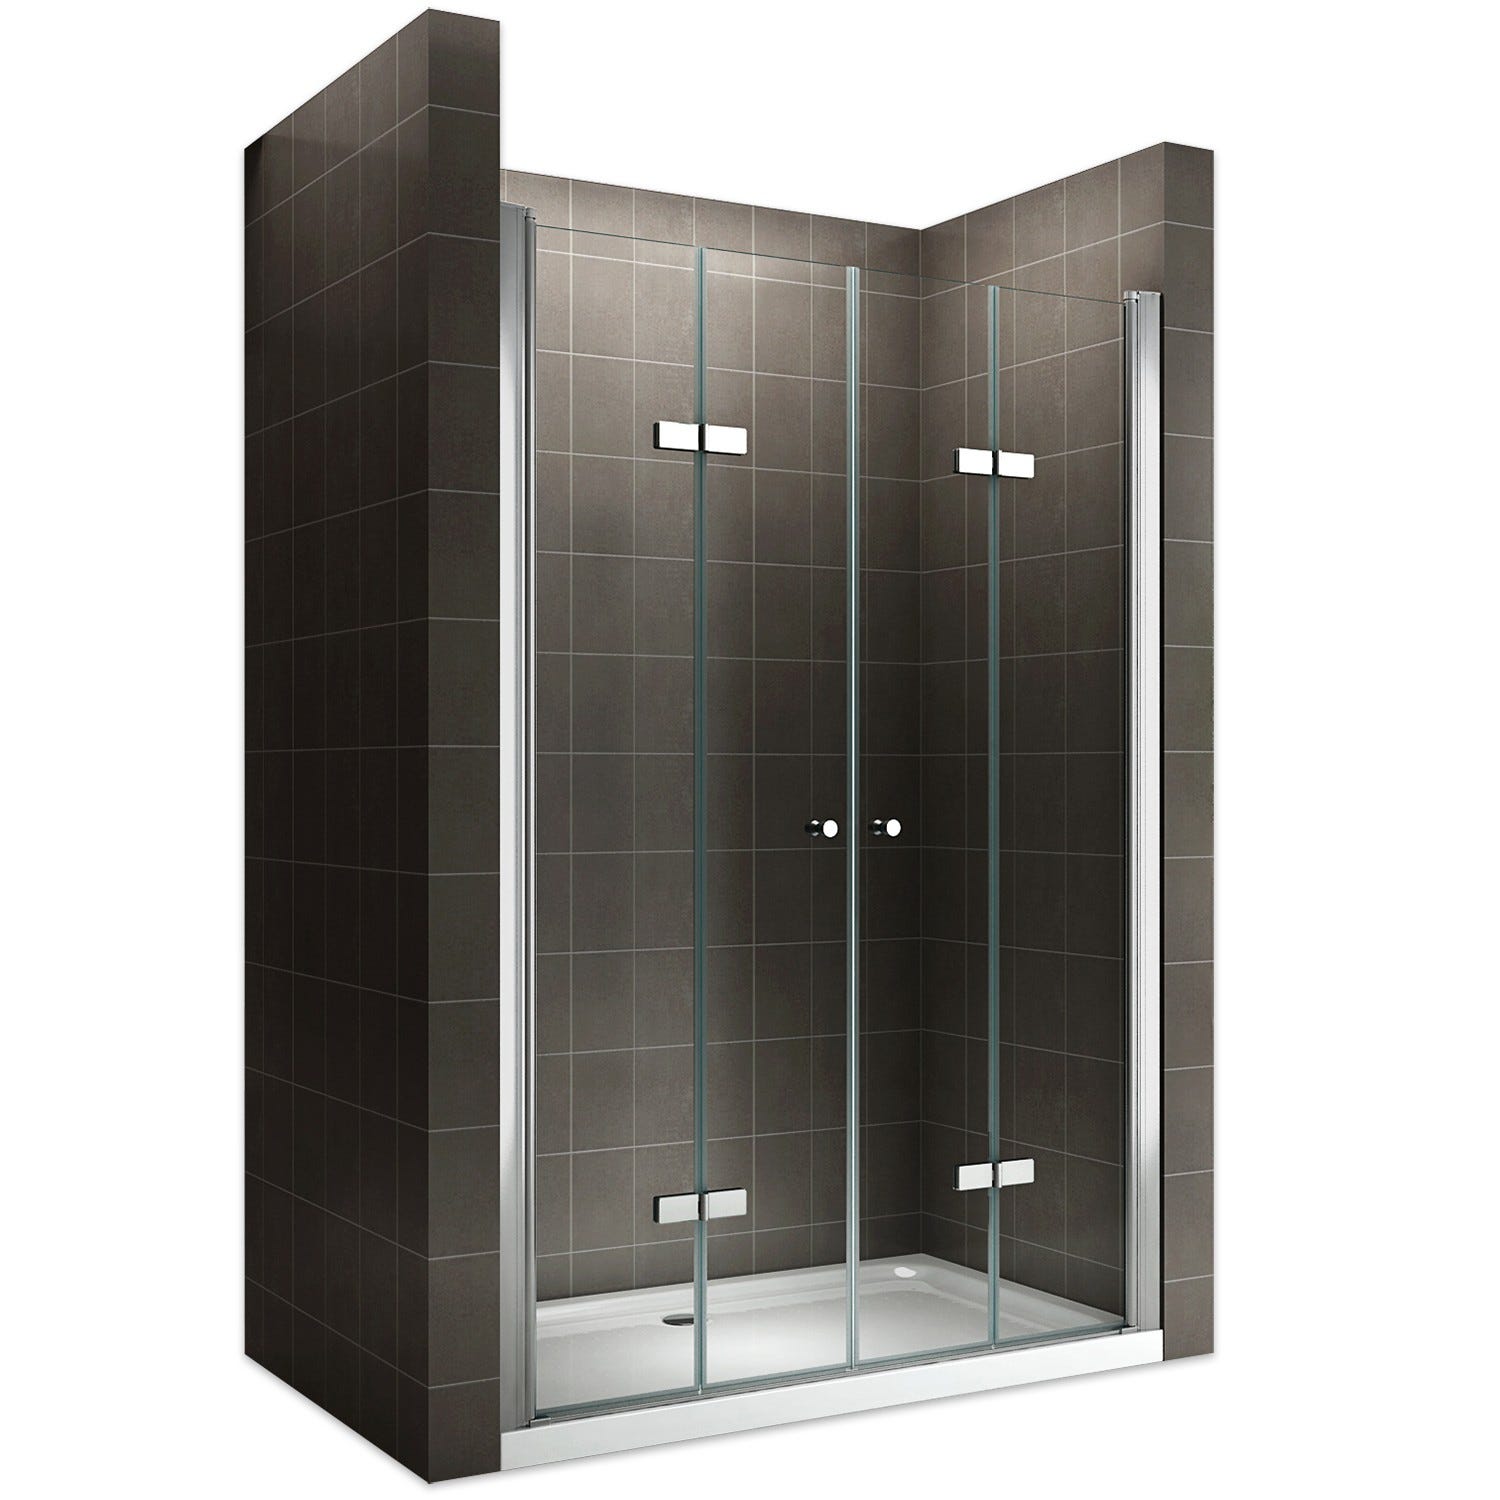 EMMY Porte de douche pliante pivotante H 185 cm largeur réglable 120 à 124 cm verre transparent 0